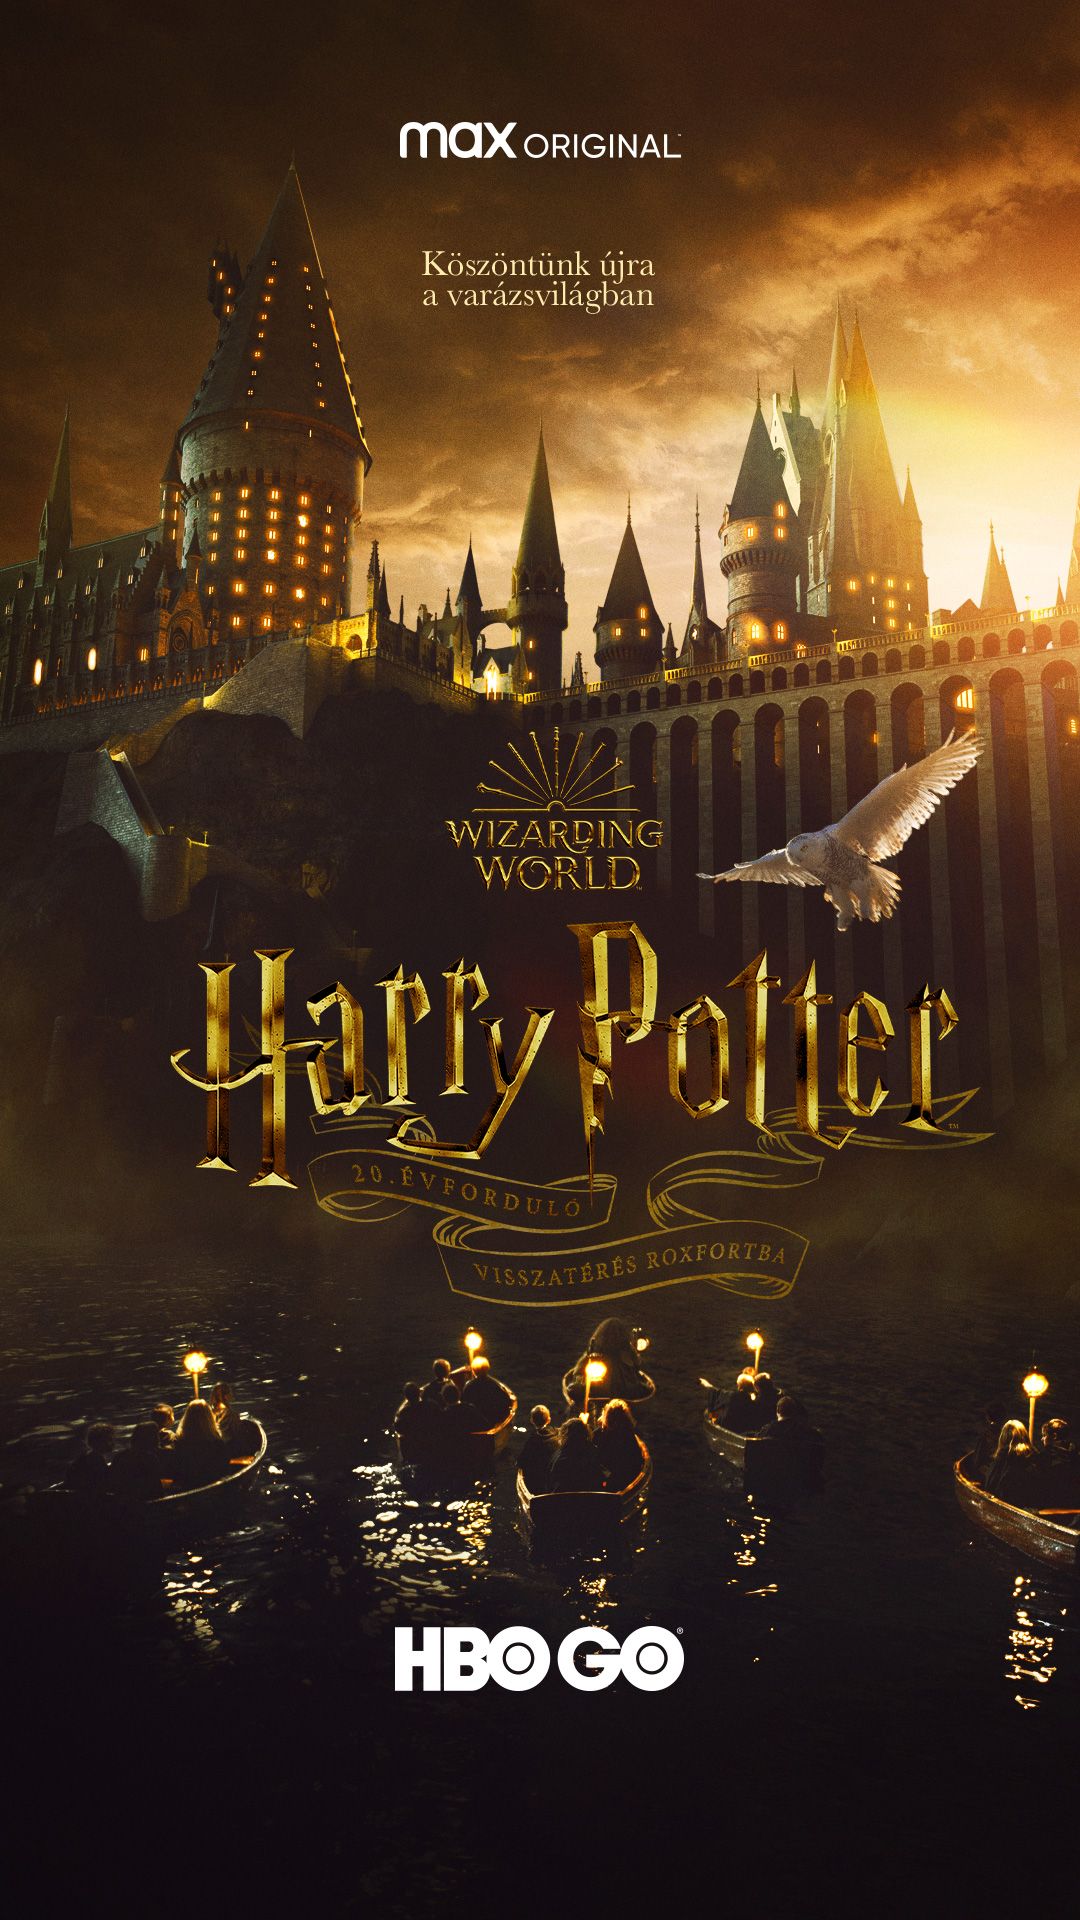 Harry Potter 20. évforduló: Visszatérés Roxfortba online film